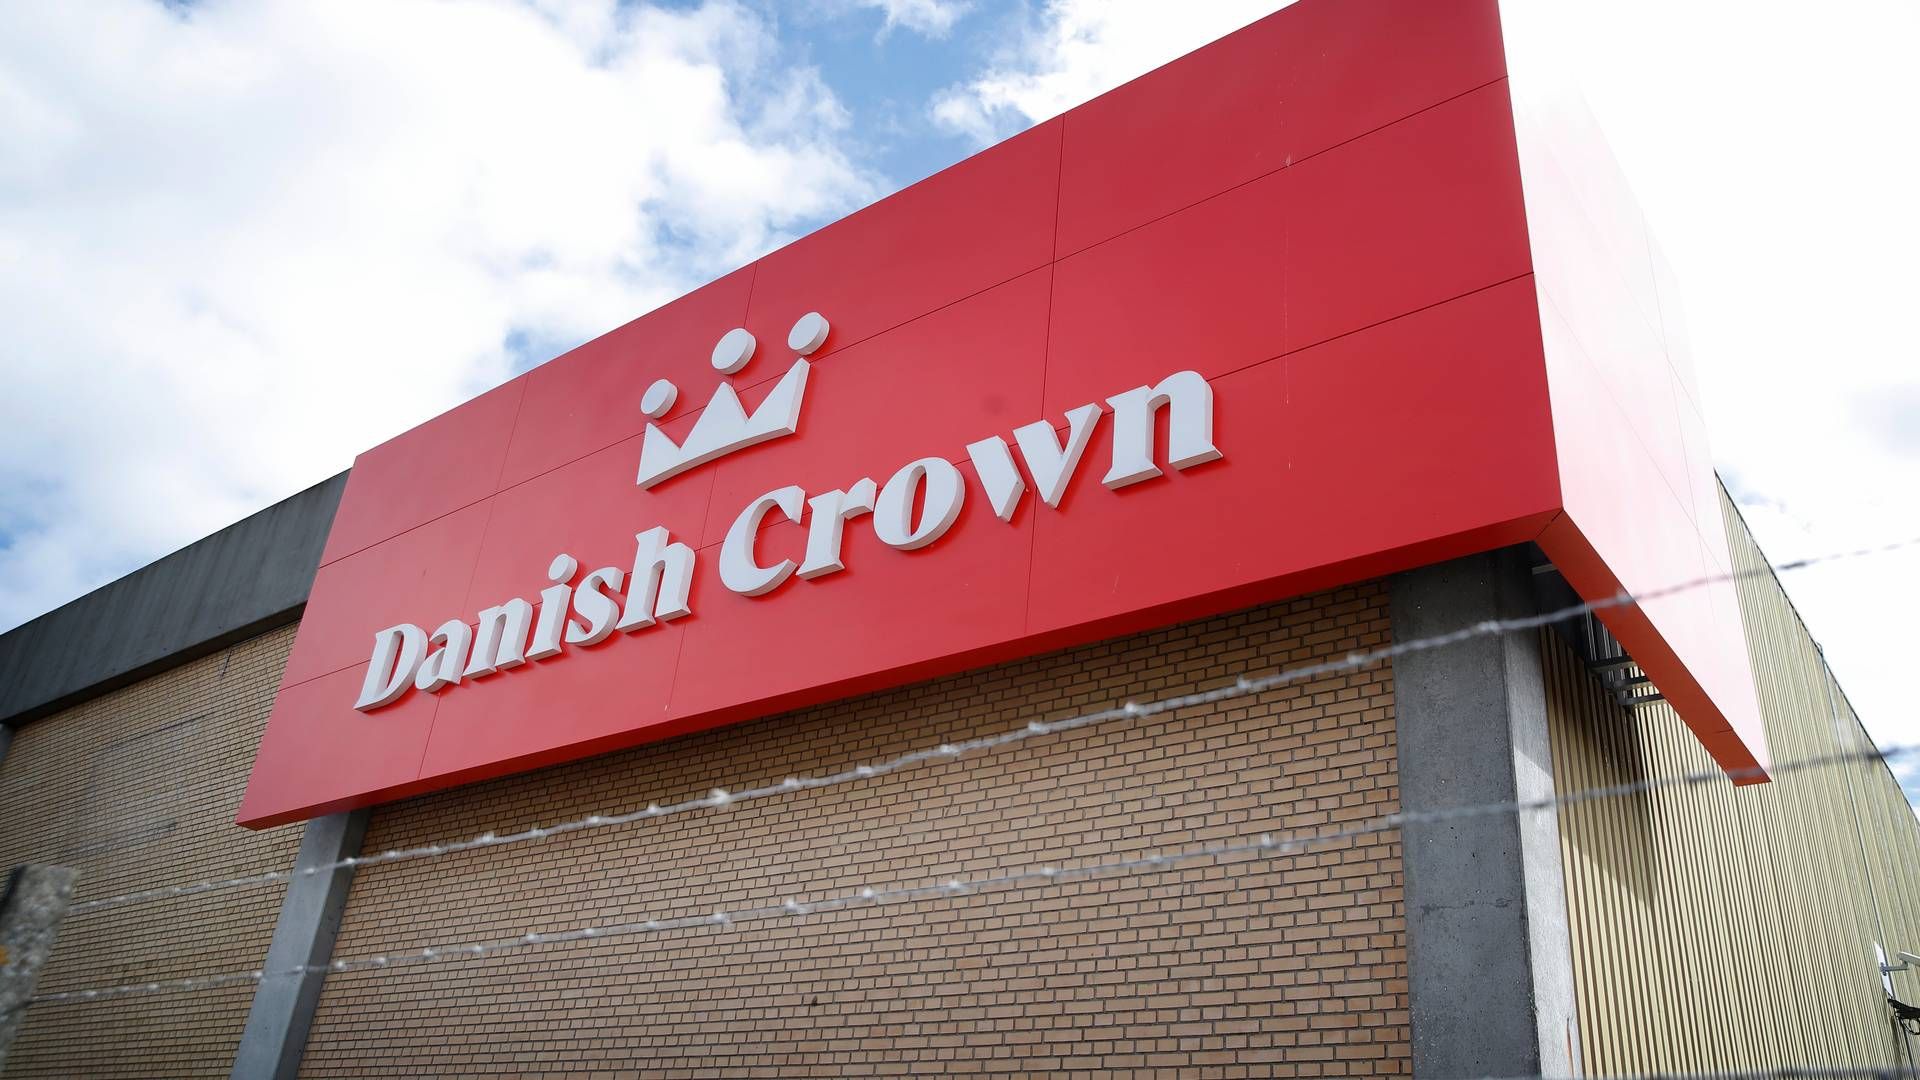 Familien til afdød medarbejder varsler nu retligt efterspil for arbejdsulykke på Danish Crown-slagteri. | Foto: Jens Dresling